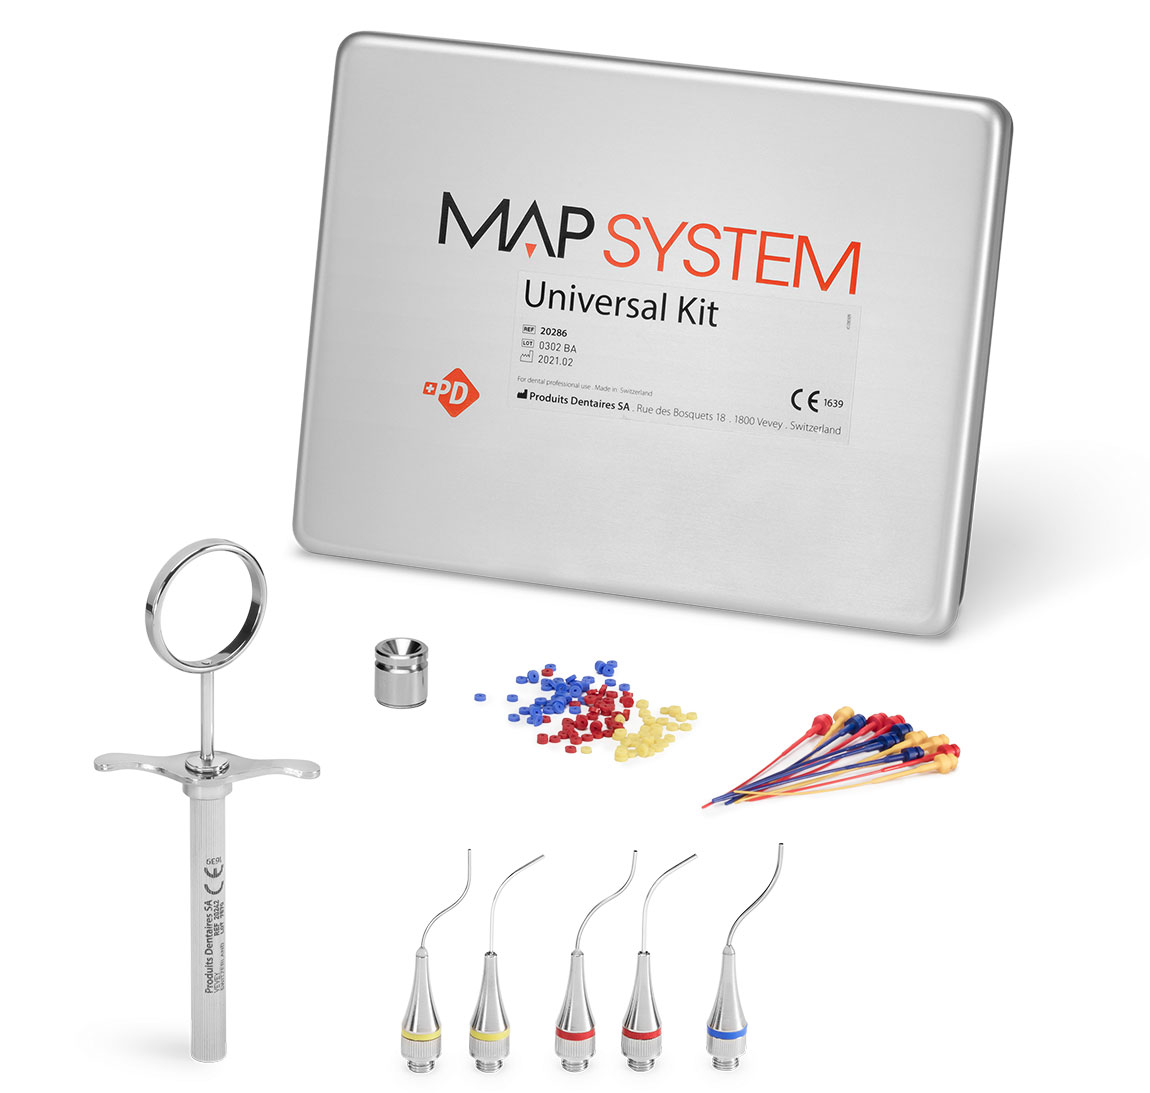 Comprar productos del kit universal del sistema MAP: cabezales de endodoncia para la colocación de cementos en los conductos radiculares